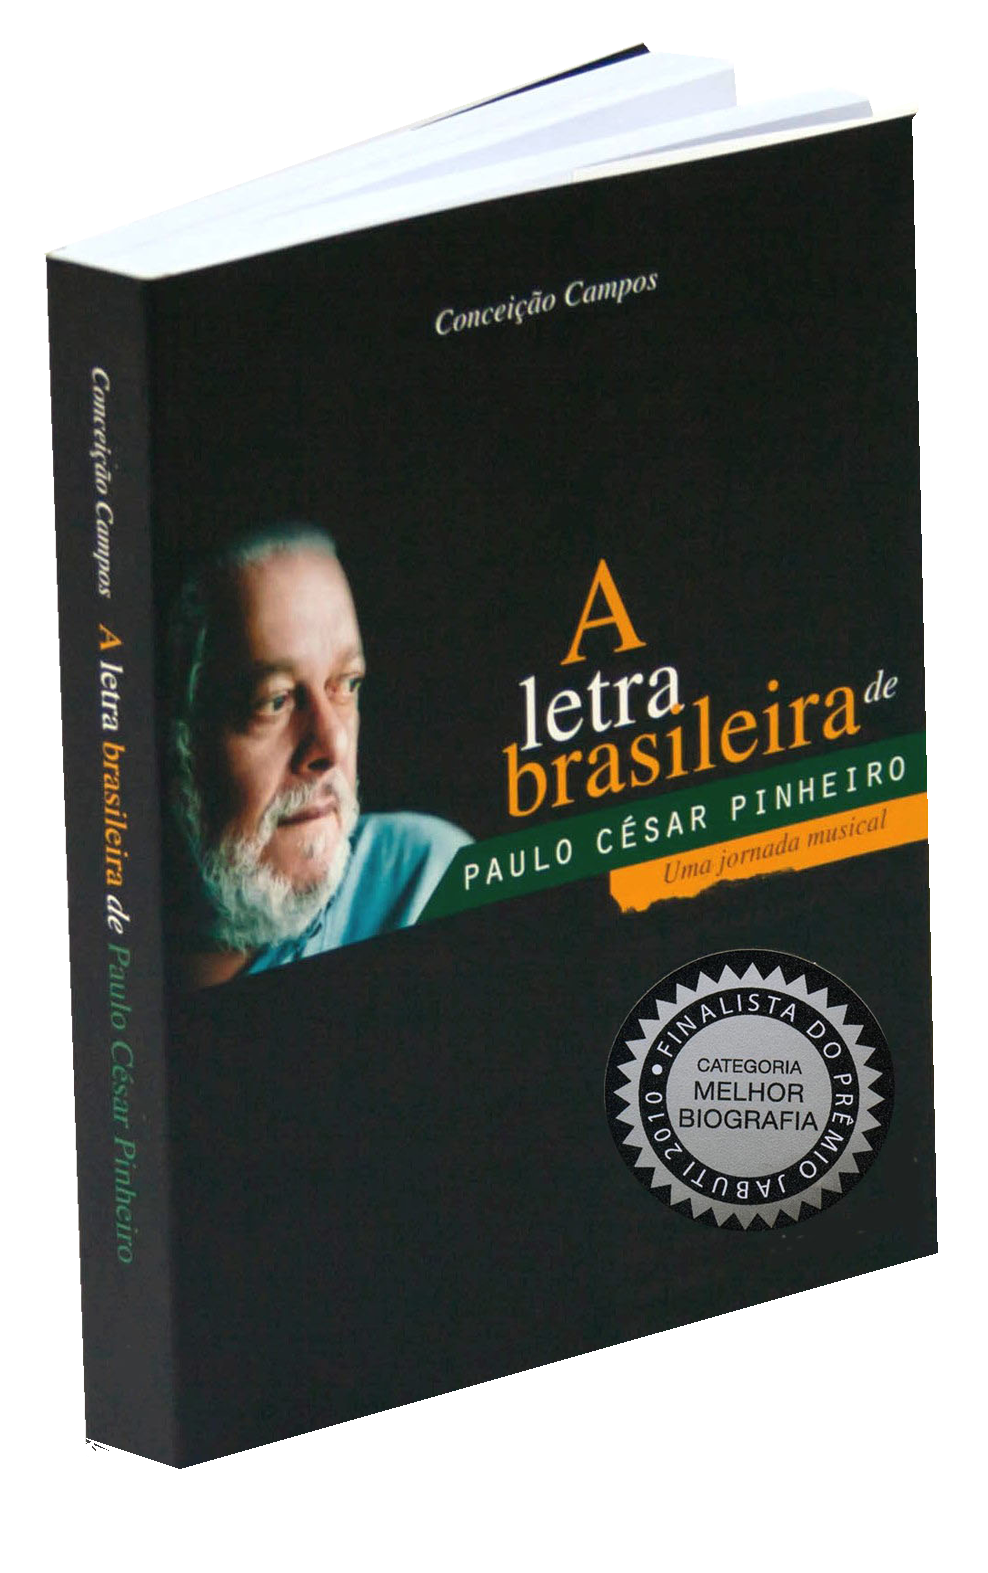 A letra brasileira de Paulo César Pinheiro